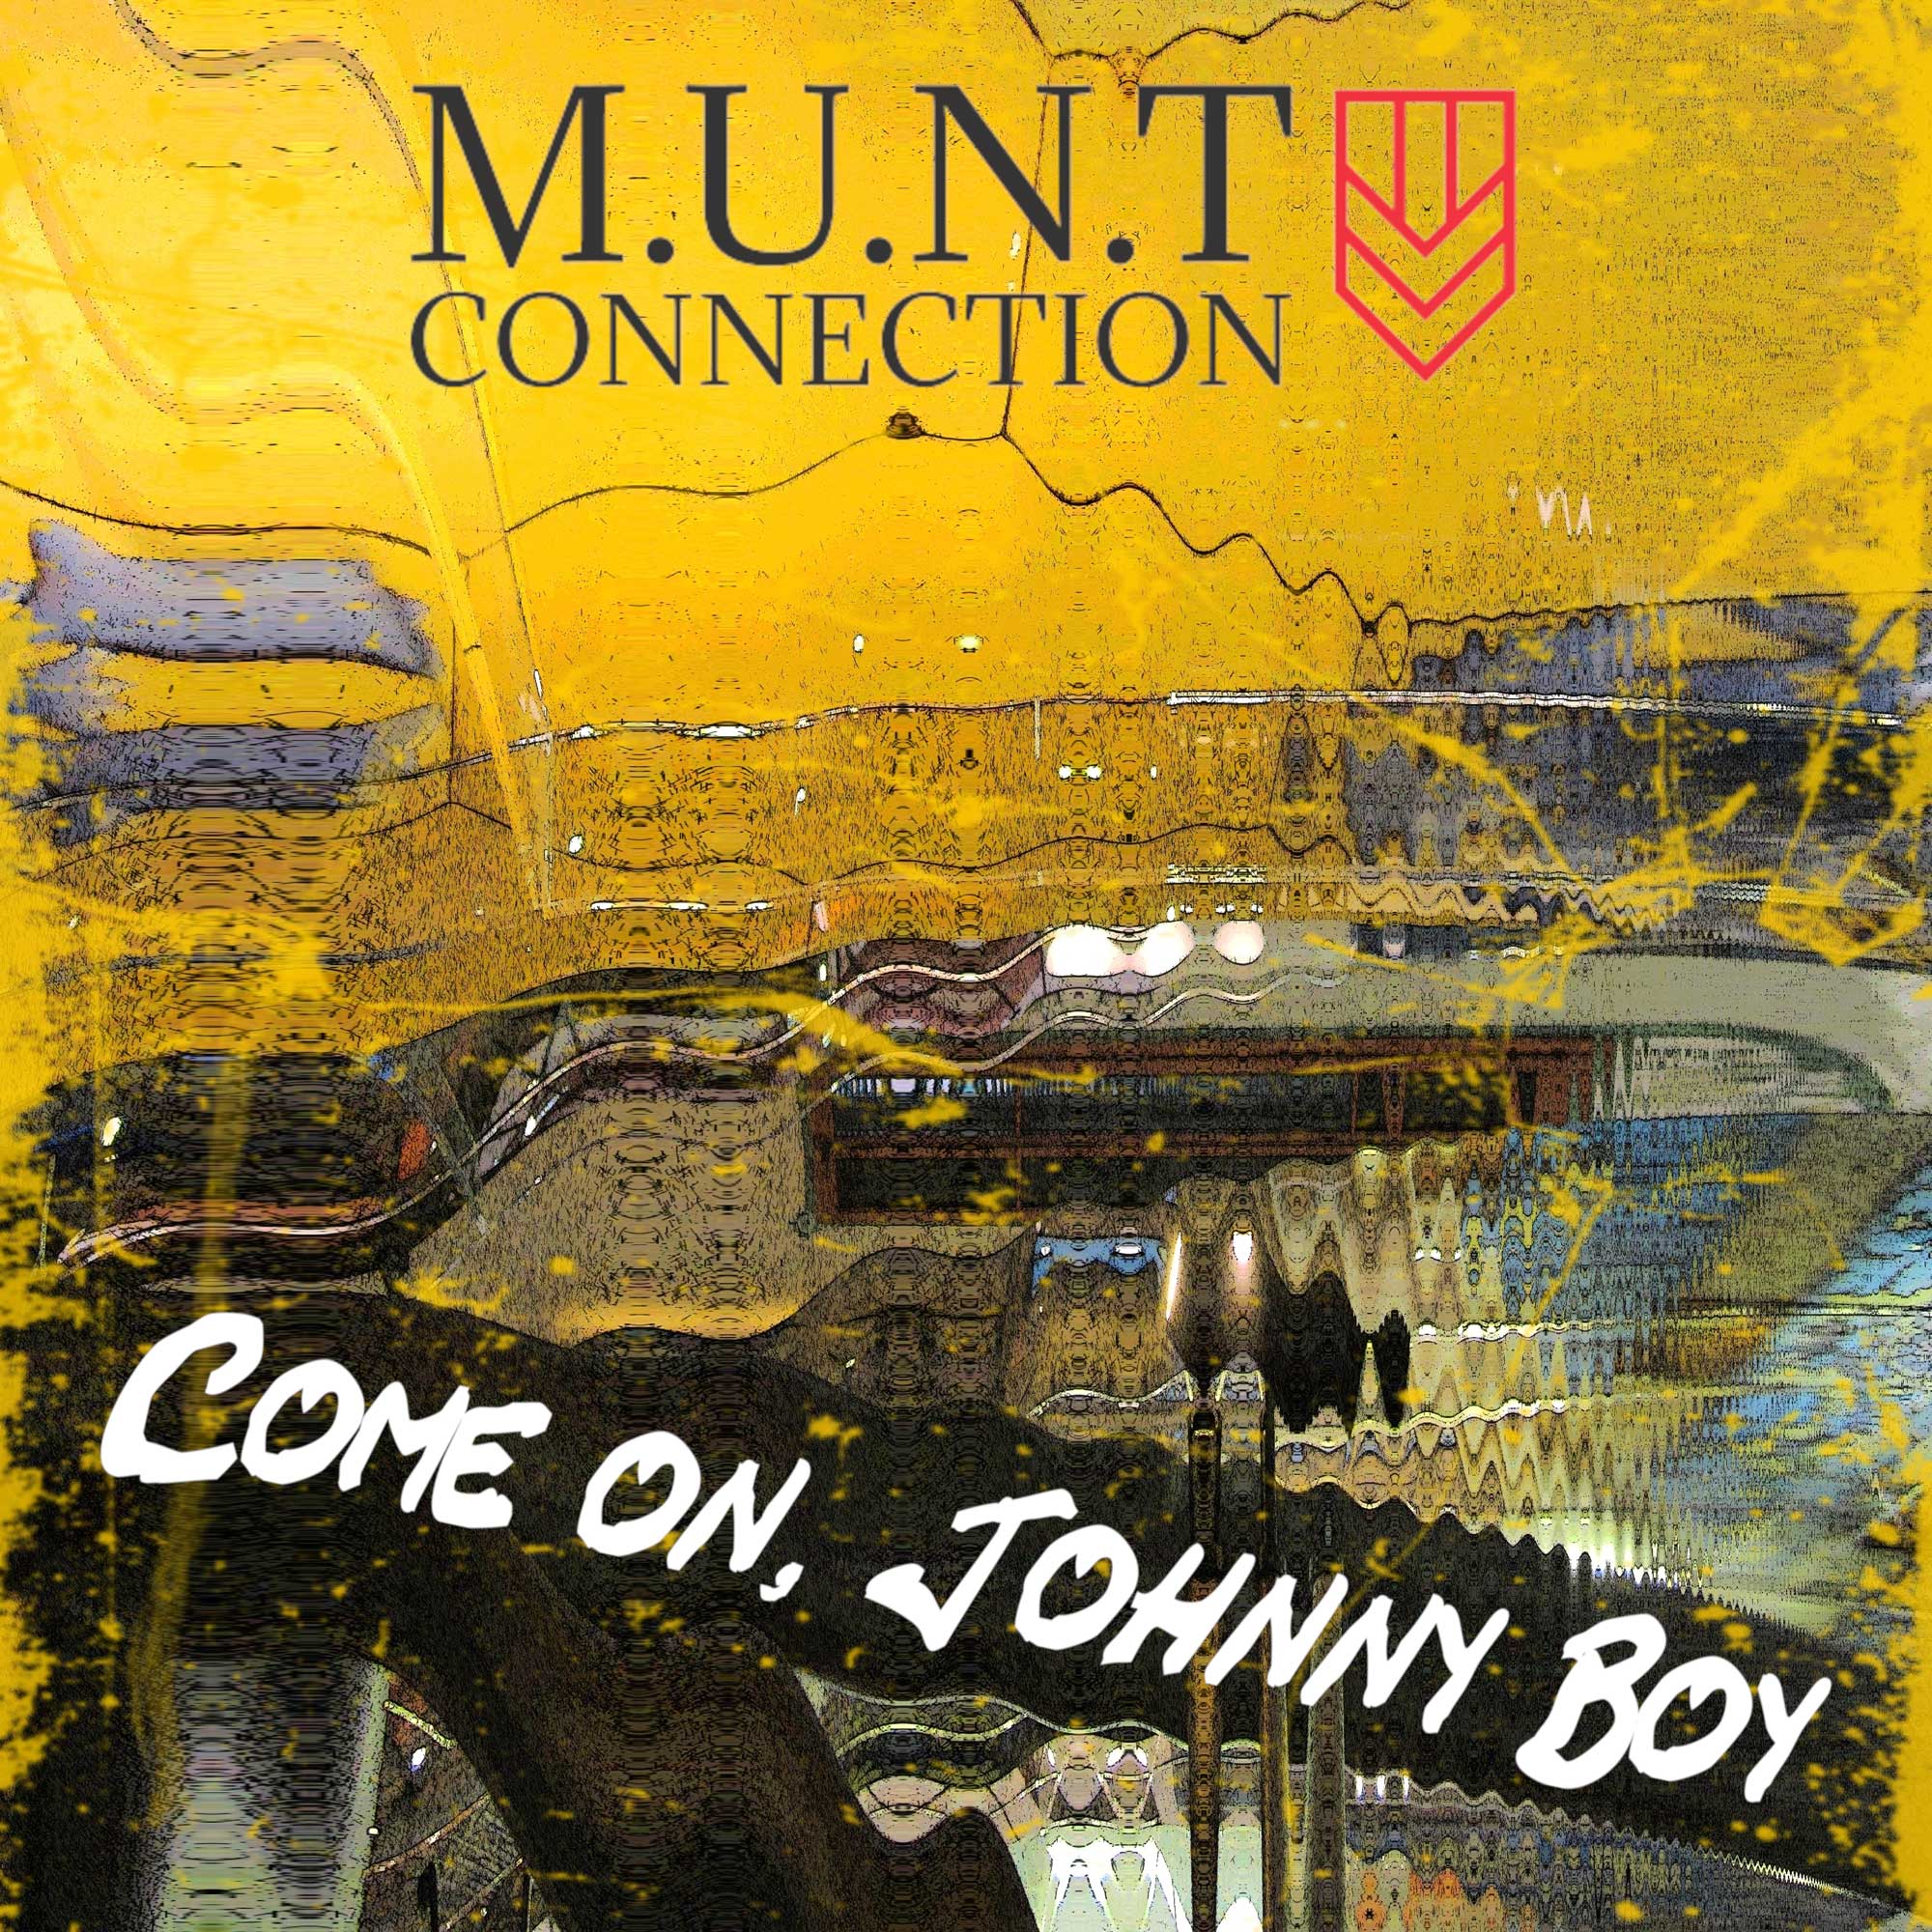 M.U.N.T Connection - Come On, Johnny Boy - M.U.N.T Connection - Come On, Johnny Boy